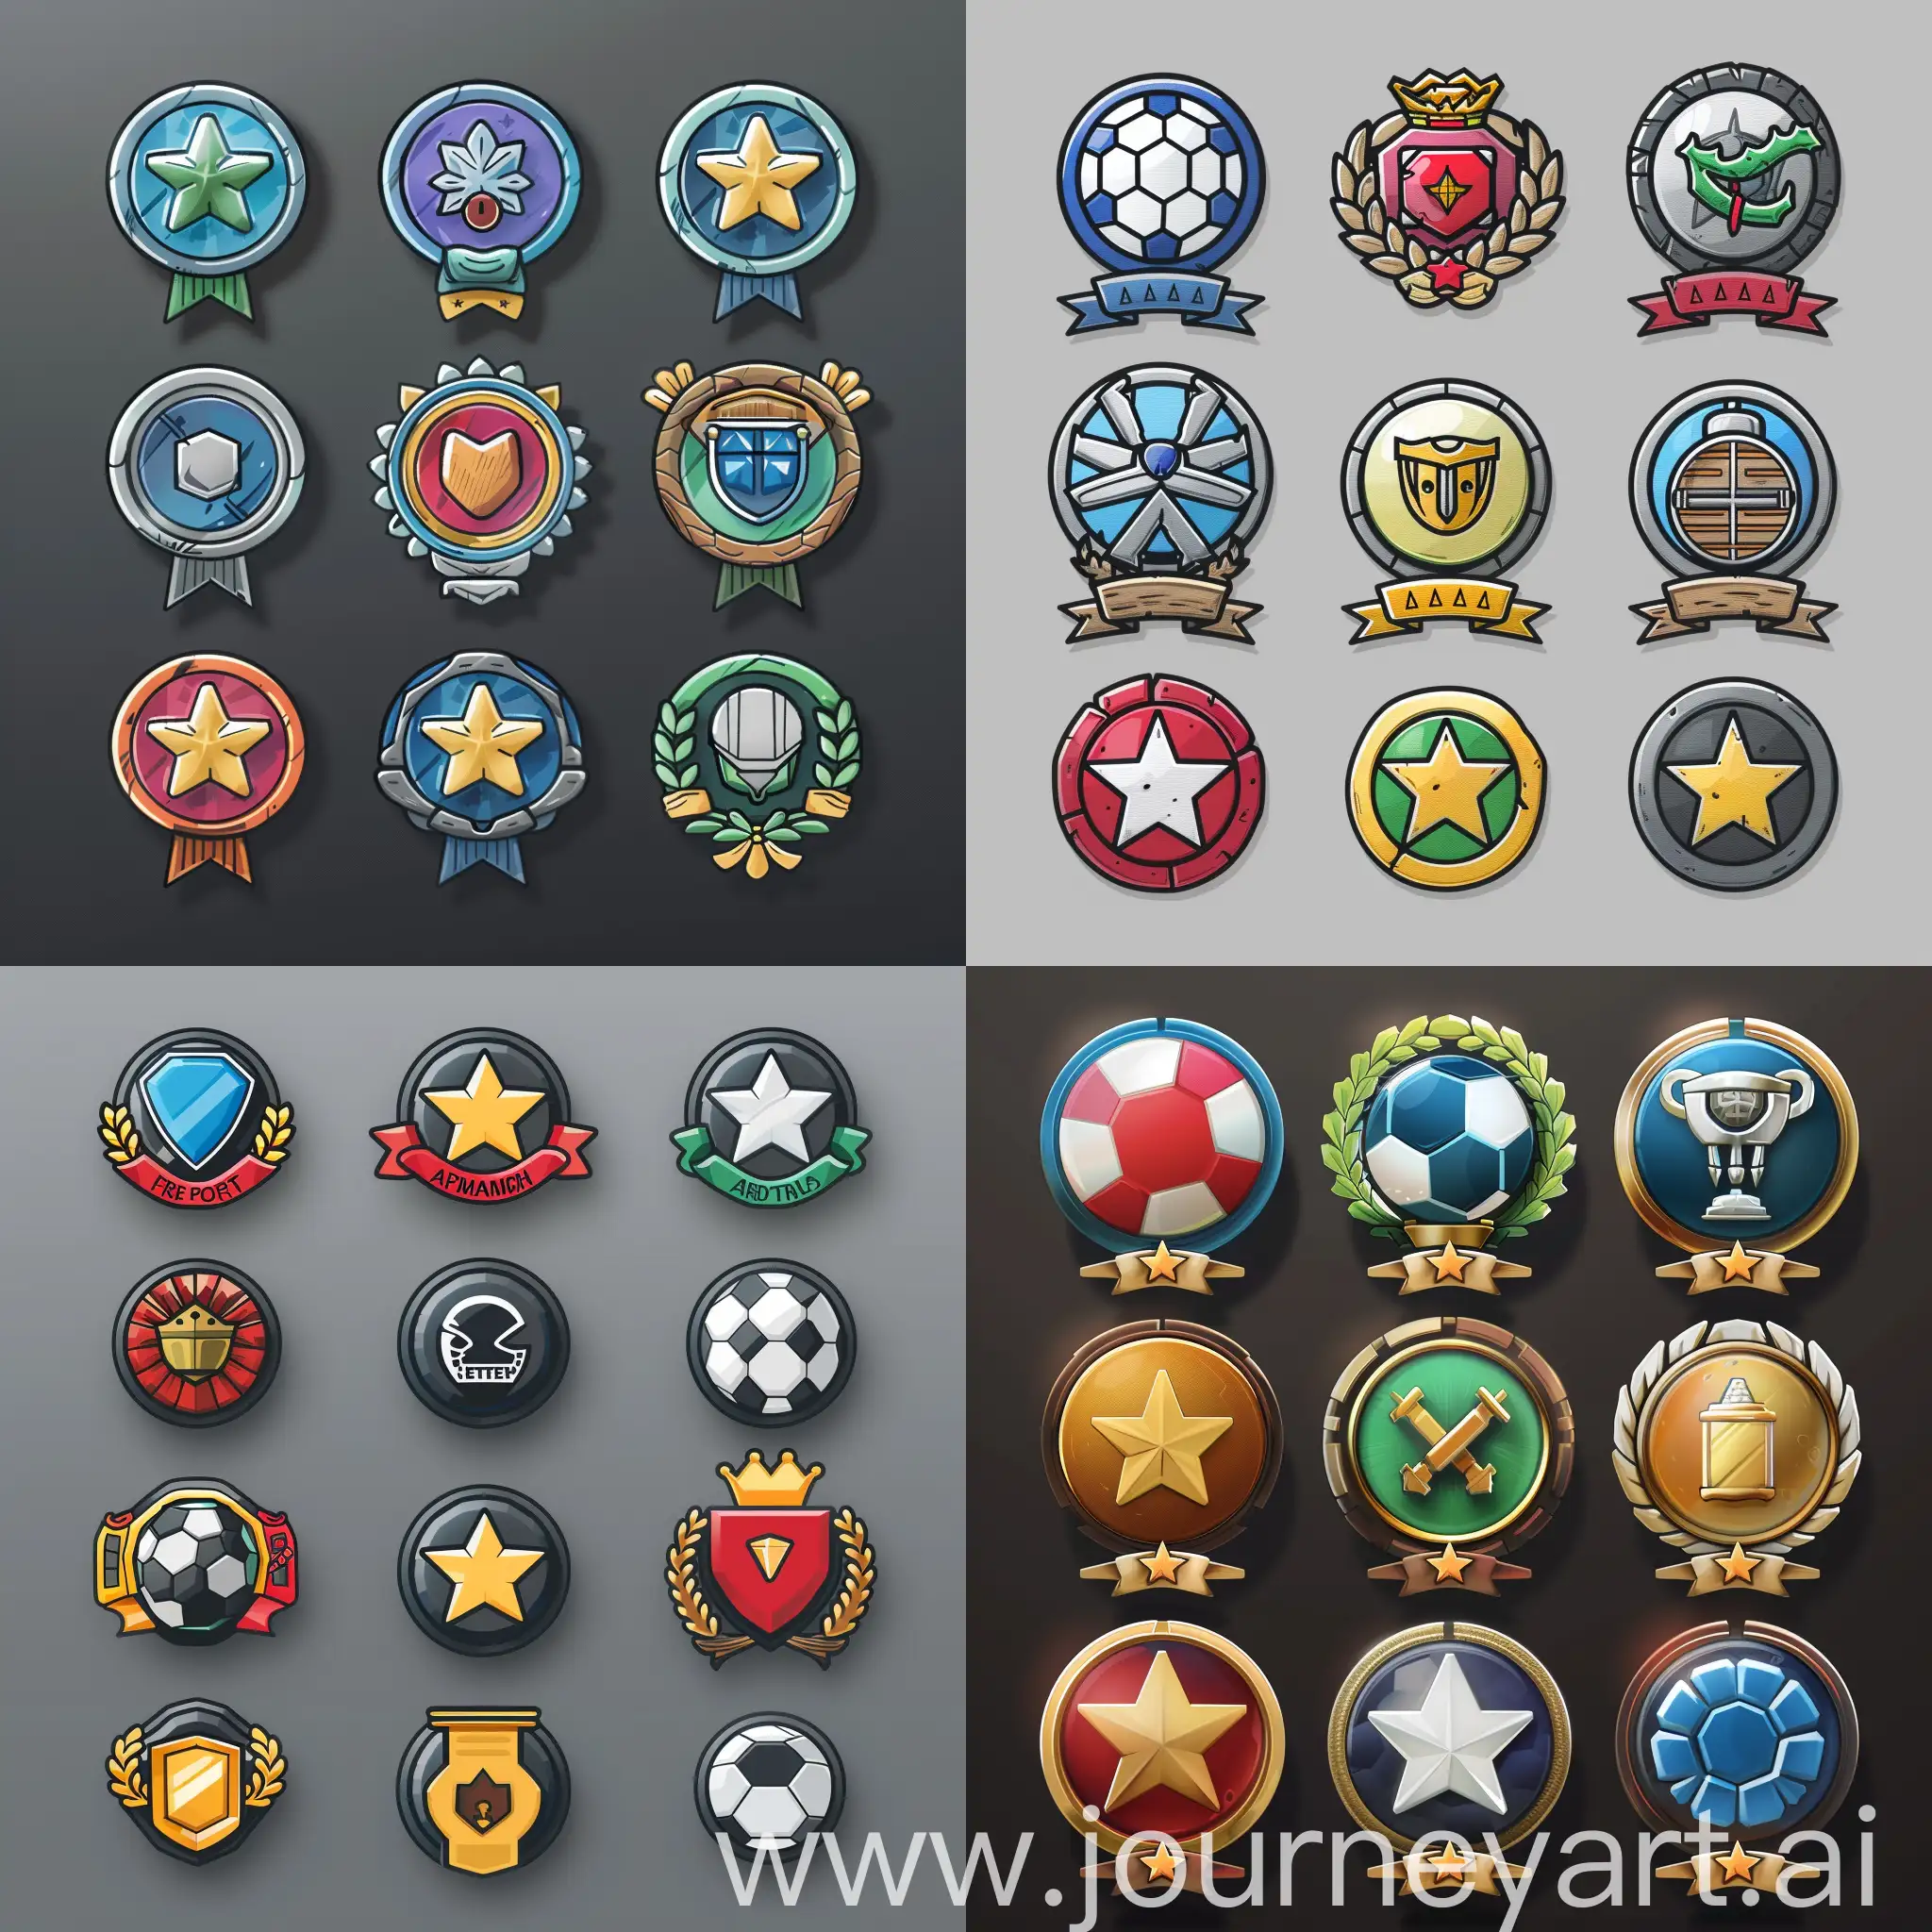 на основе Free Sport Achievement Badges Icon Pack создай новые иконки для достижений